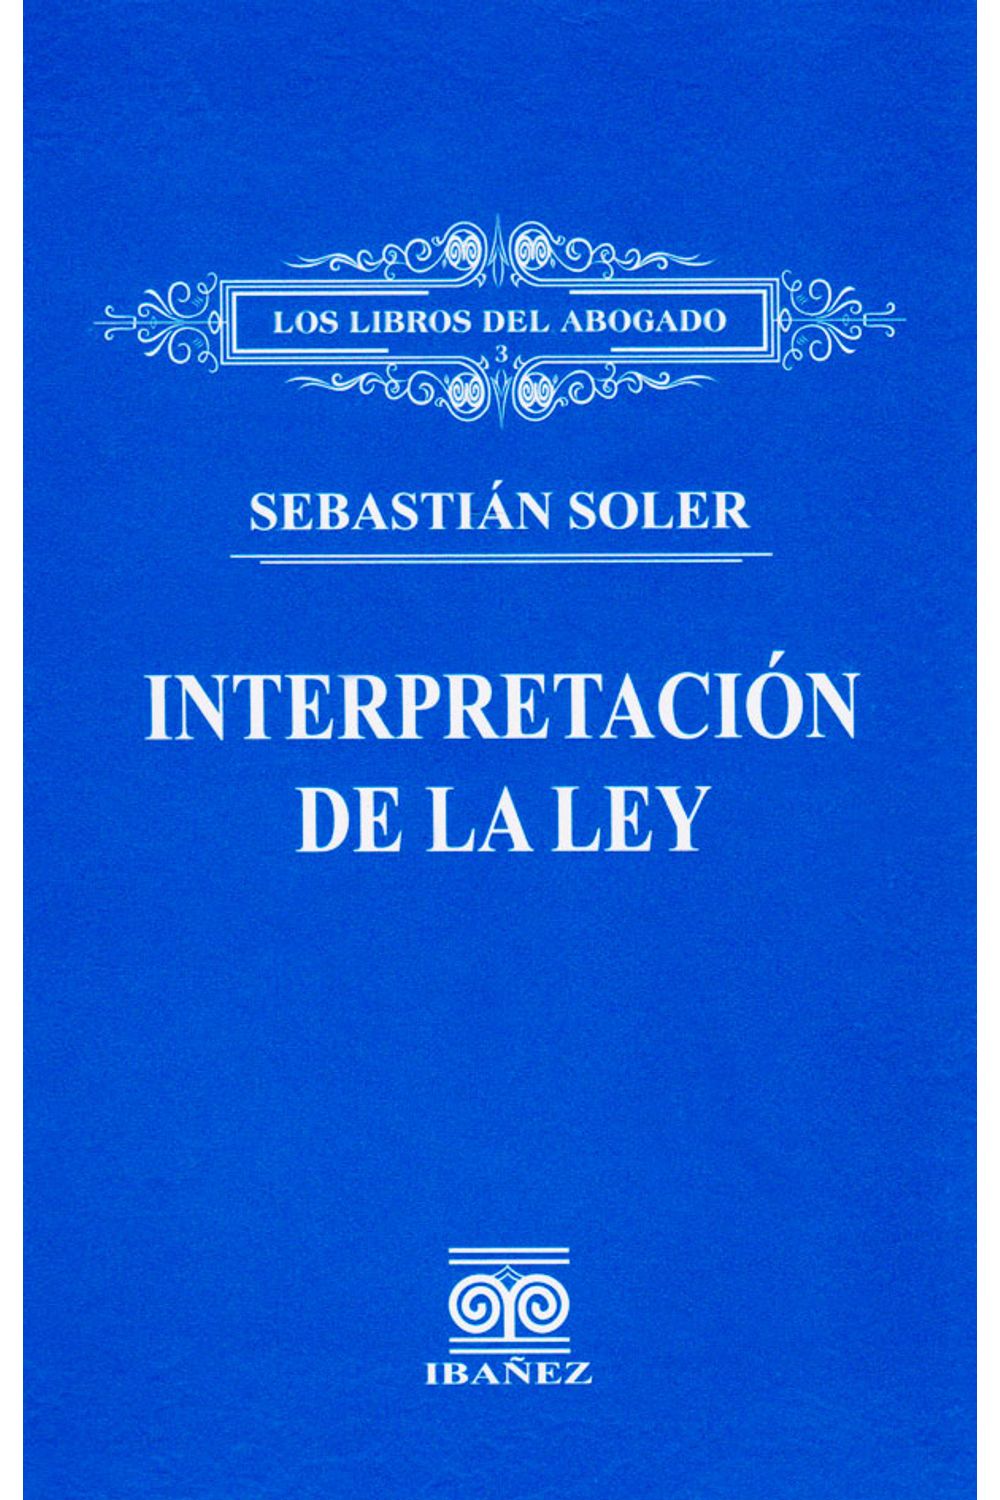 la-interpretacion-de-la-ley-9789588381329-inte